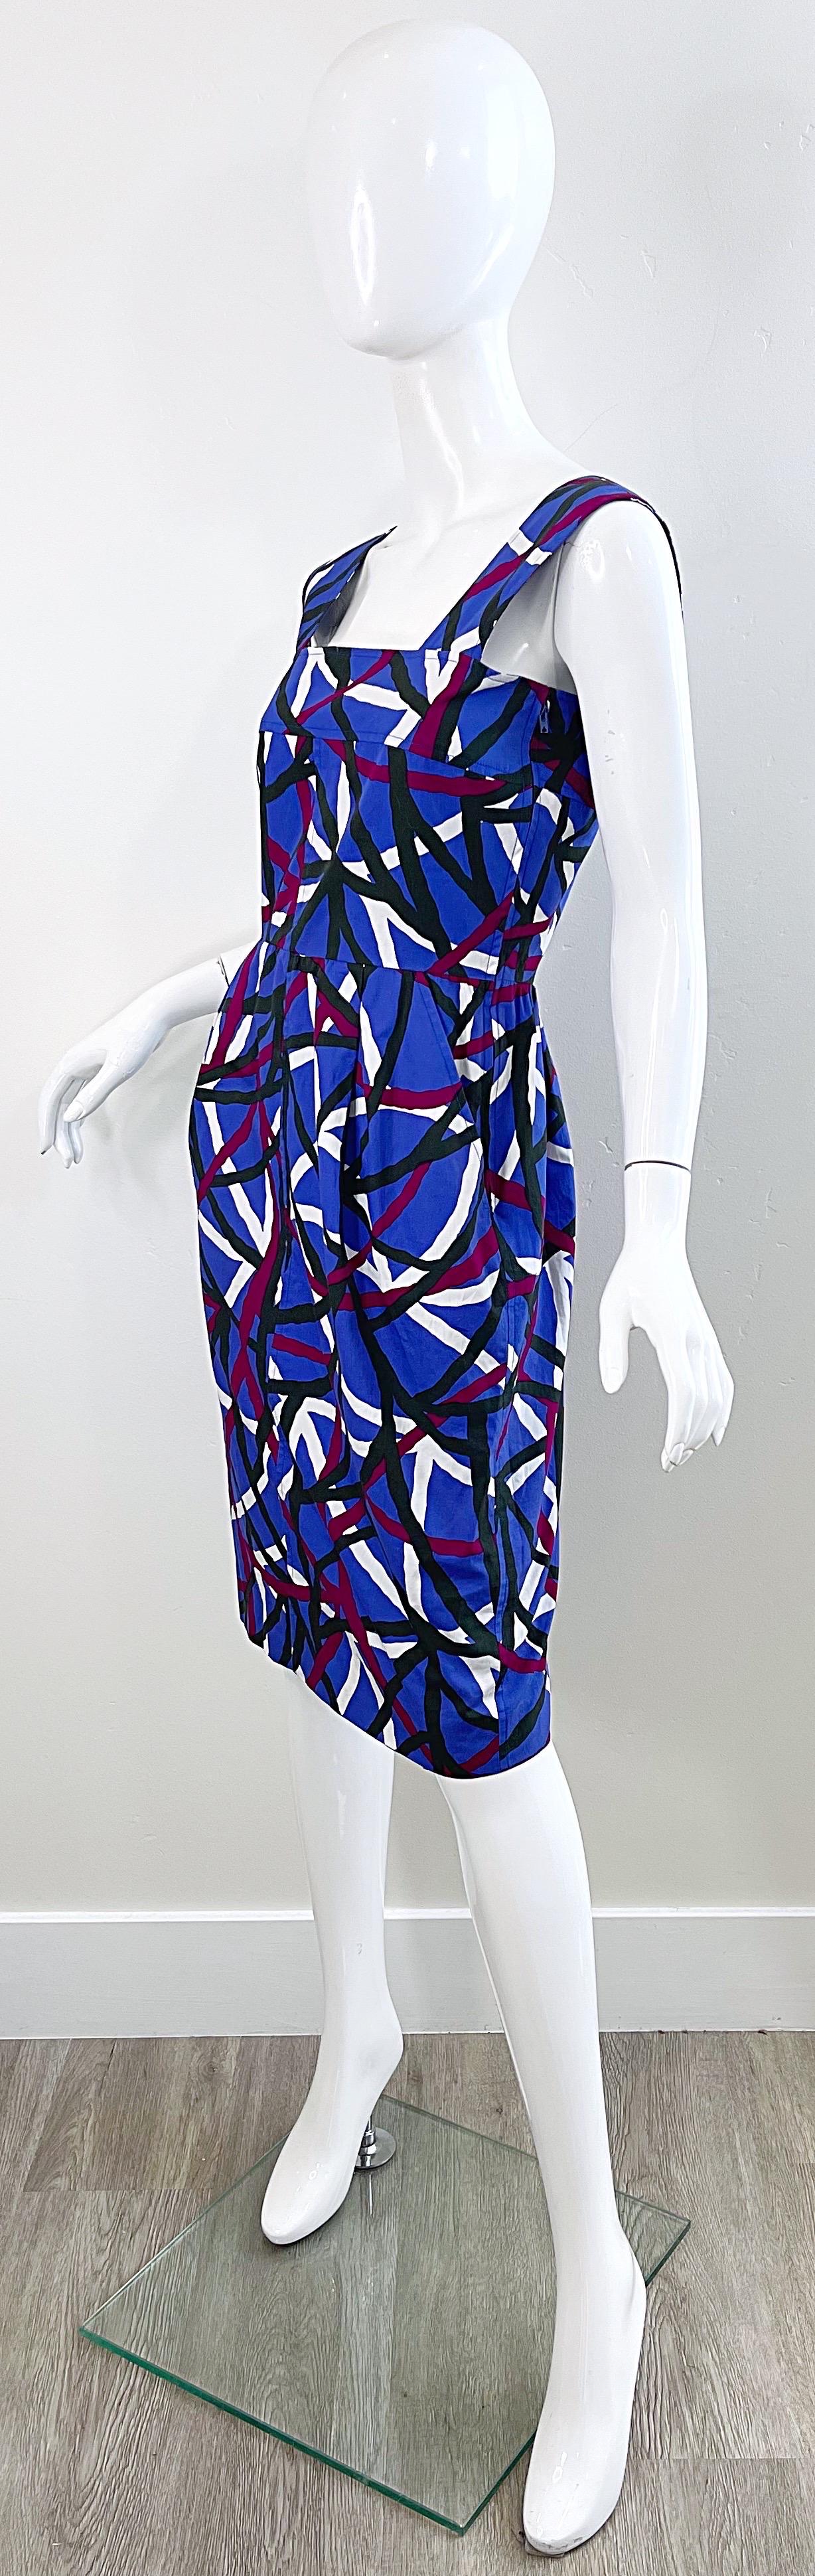 Yves Saint Laurent 1970s YSL Graffiti Print Purple Cotton Vintage 70s Dress For Sale 9